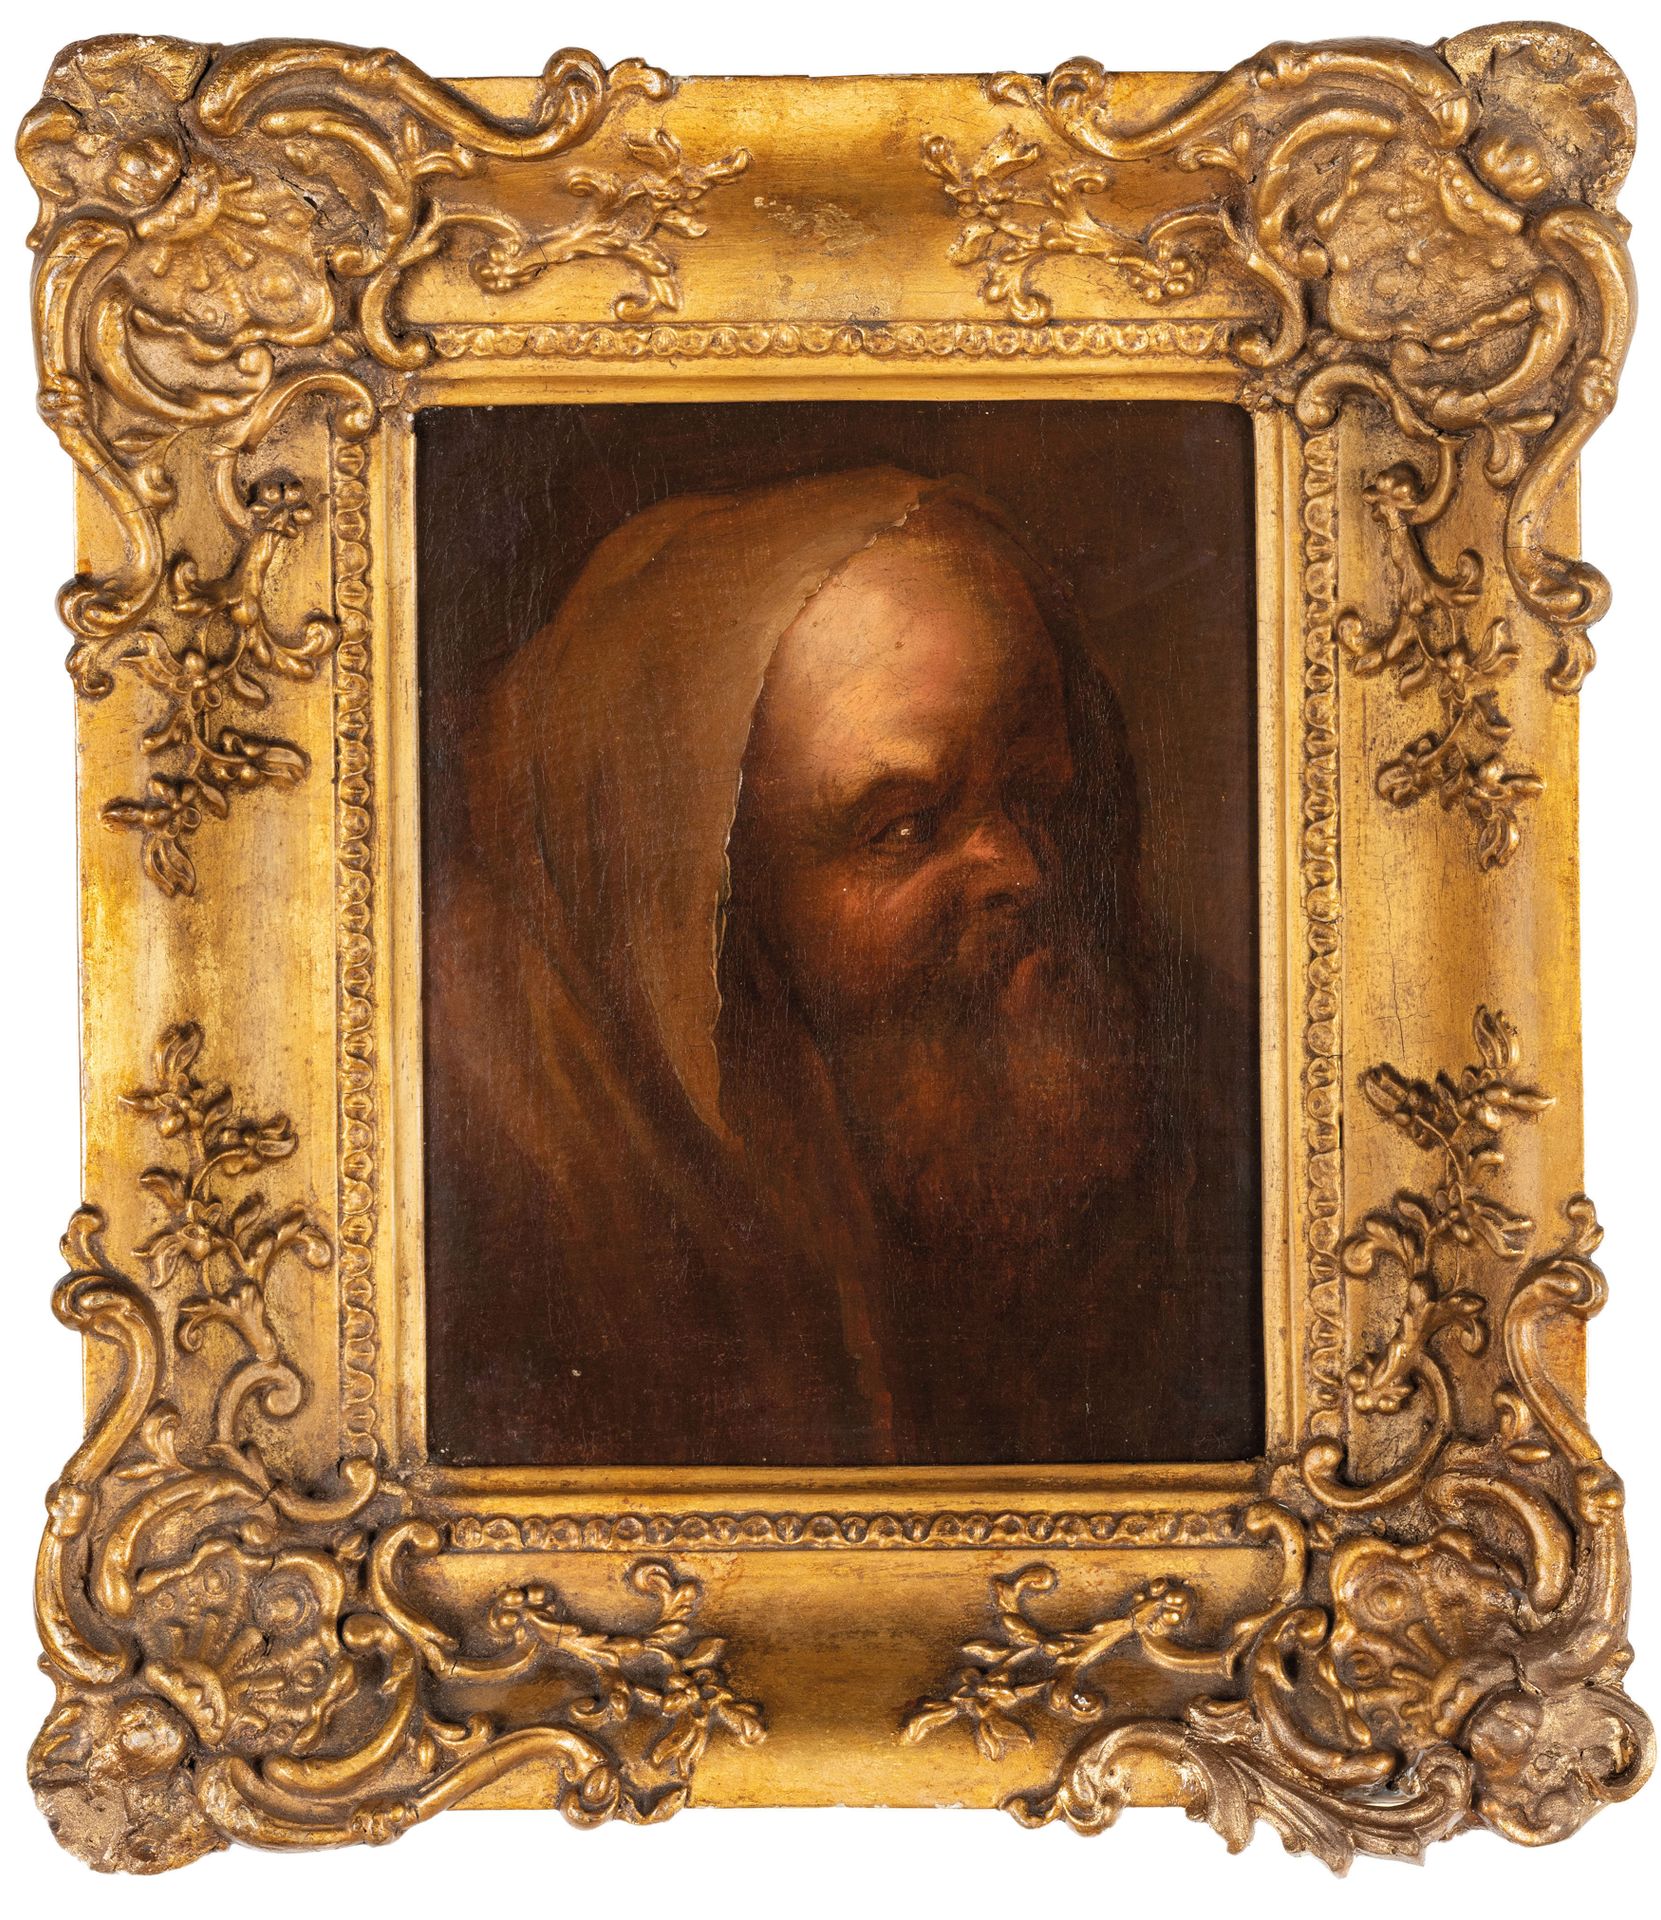 PITTORE DEL XVII-XVIII SECOLO 肖像
布面油画，23X19厘米